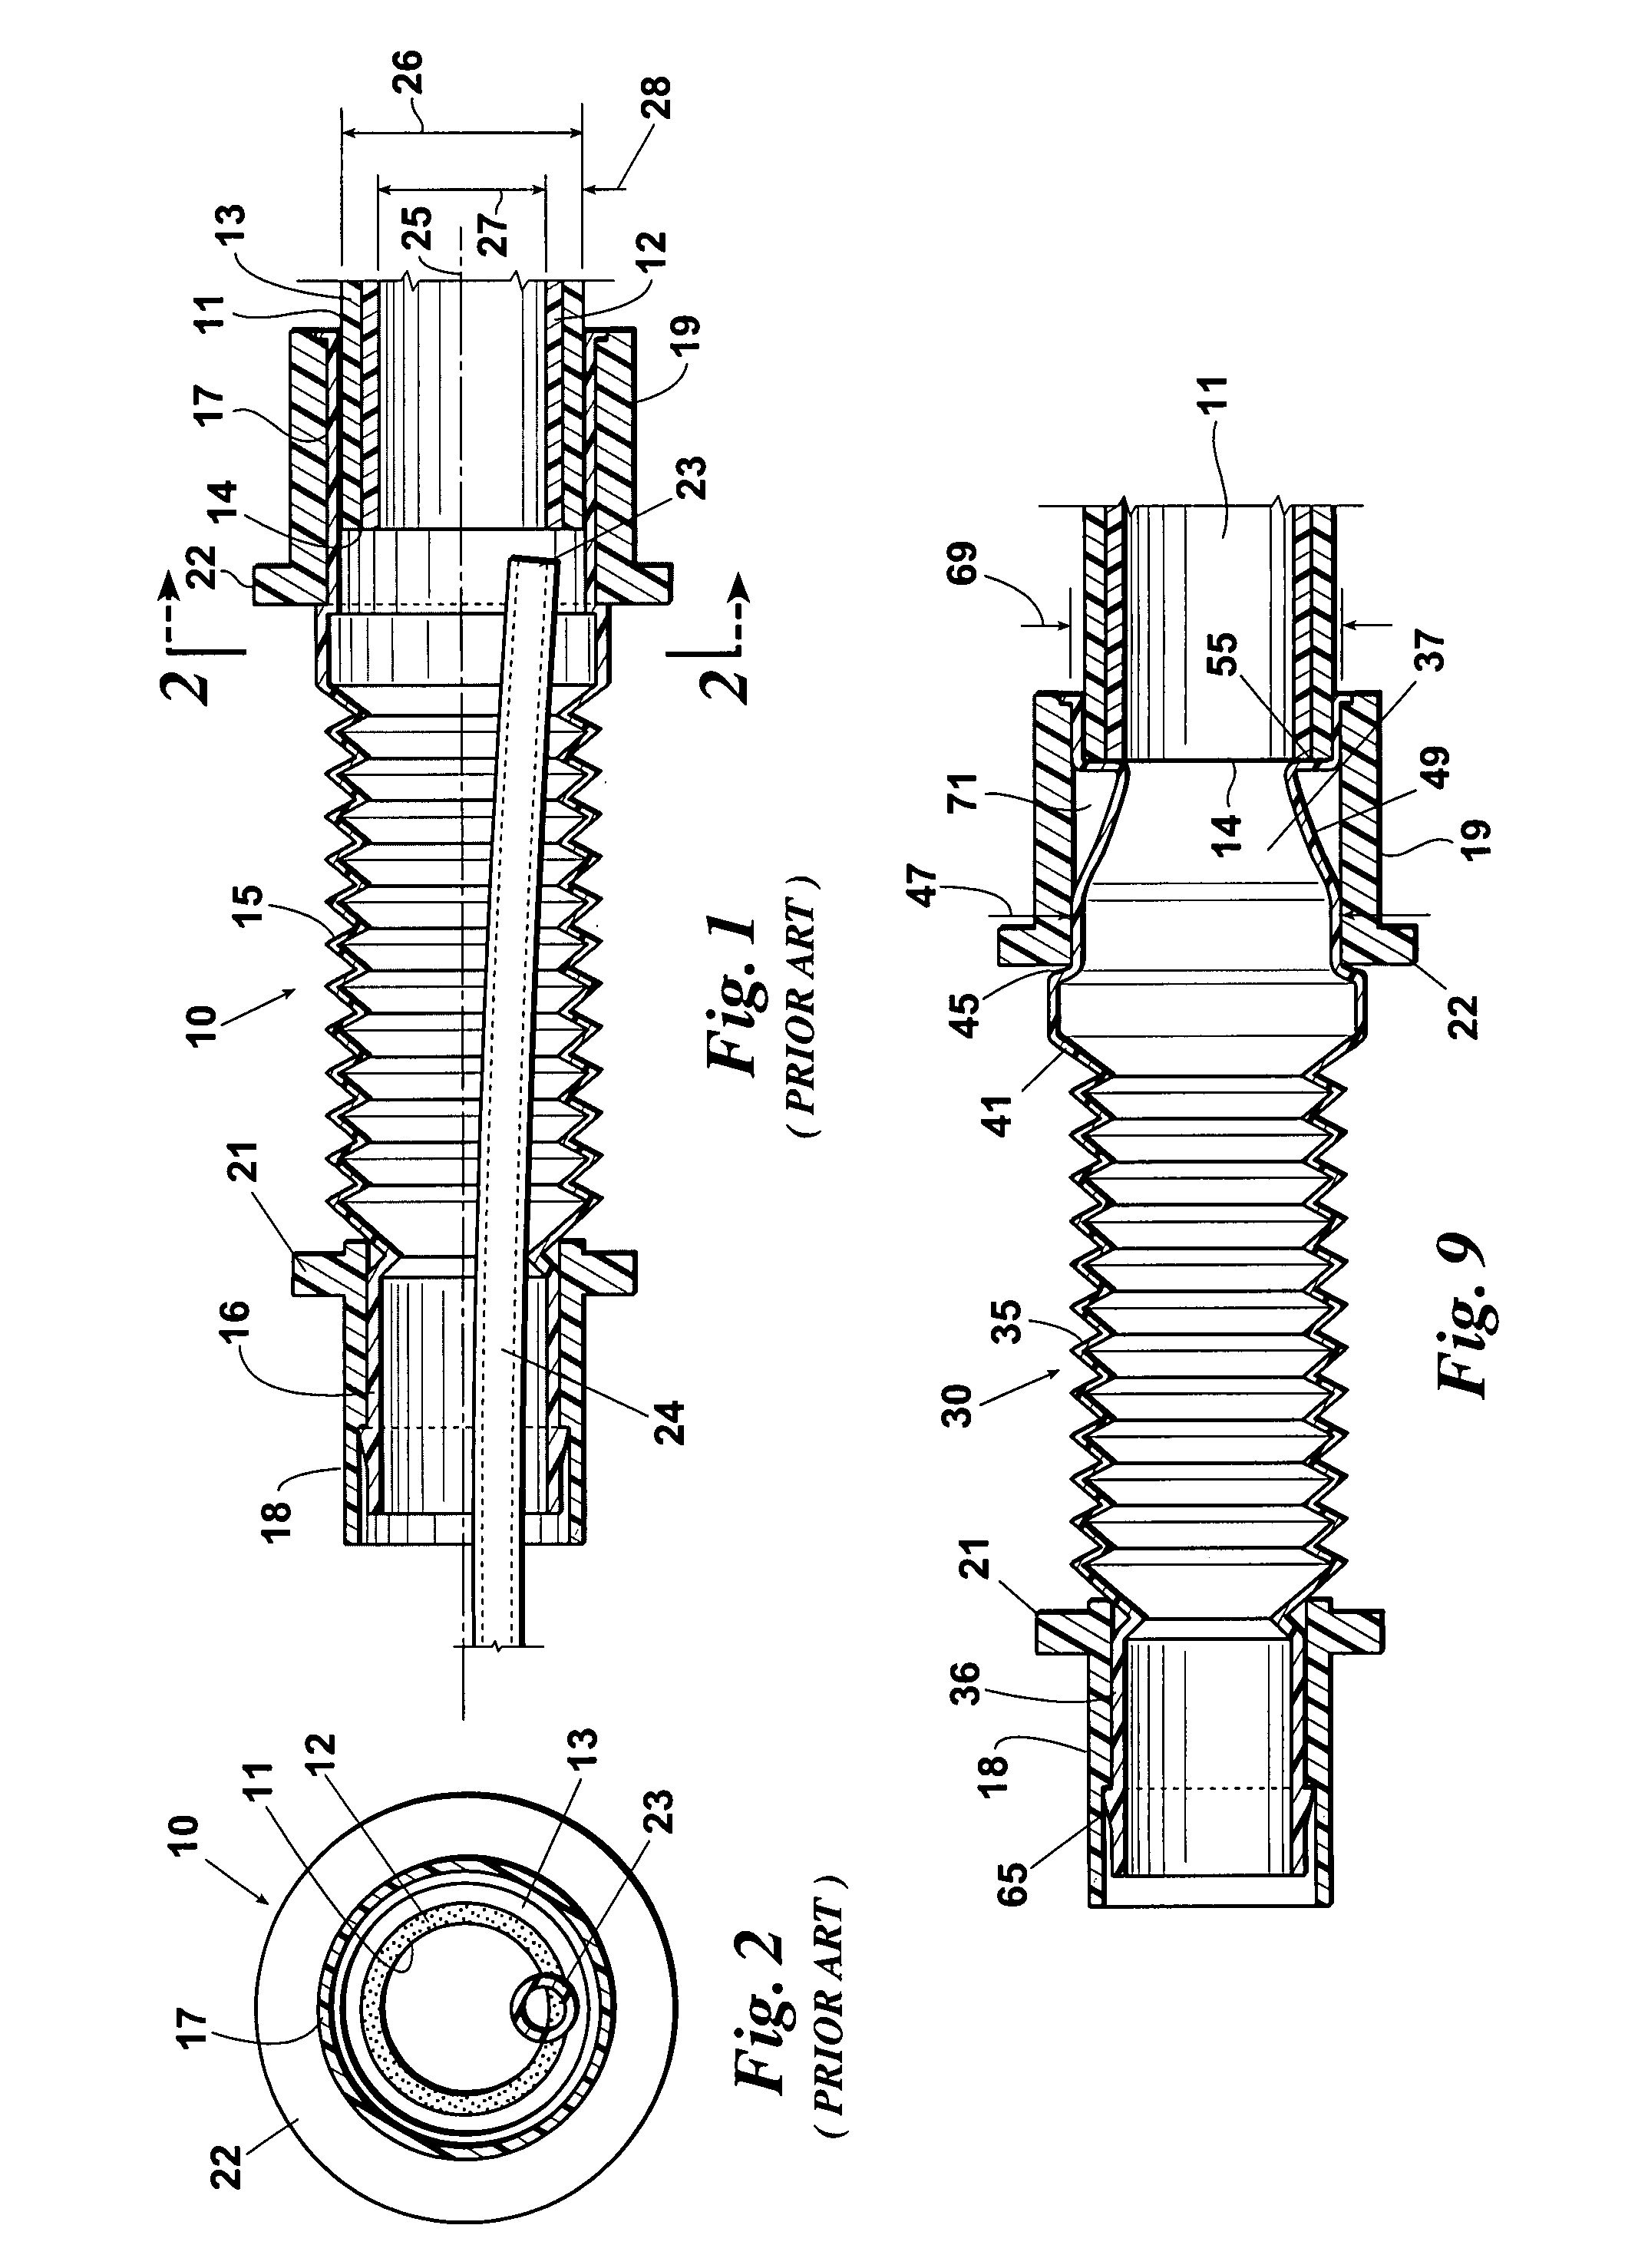 Catheter guiding flexible connector